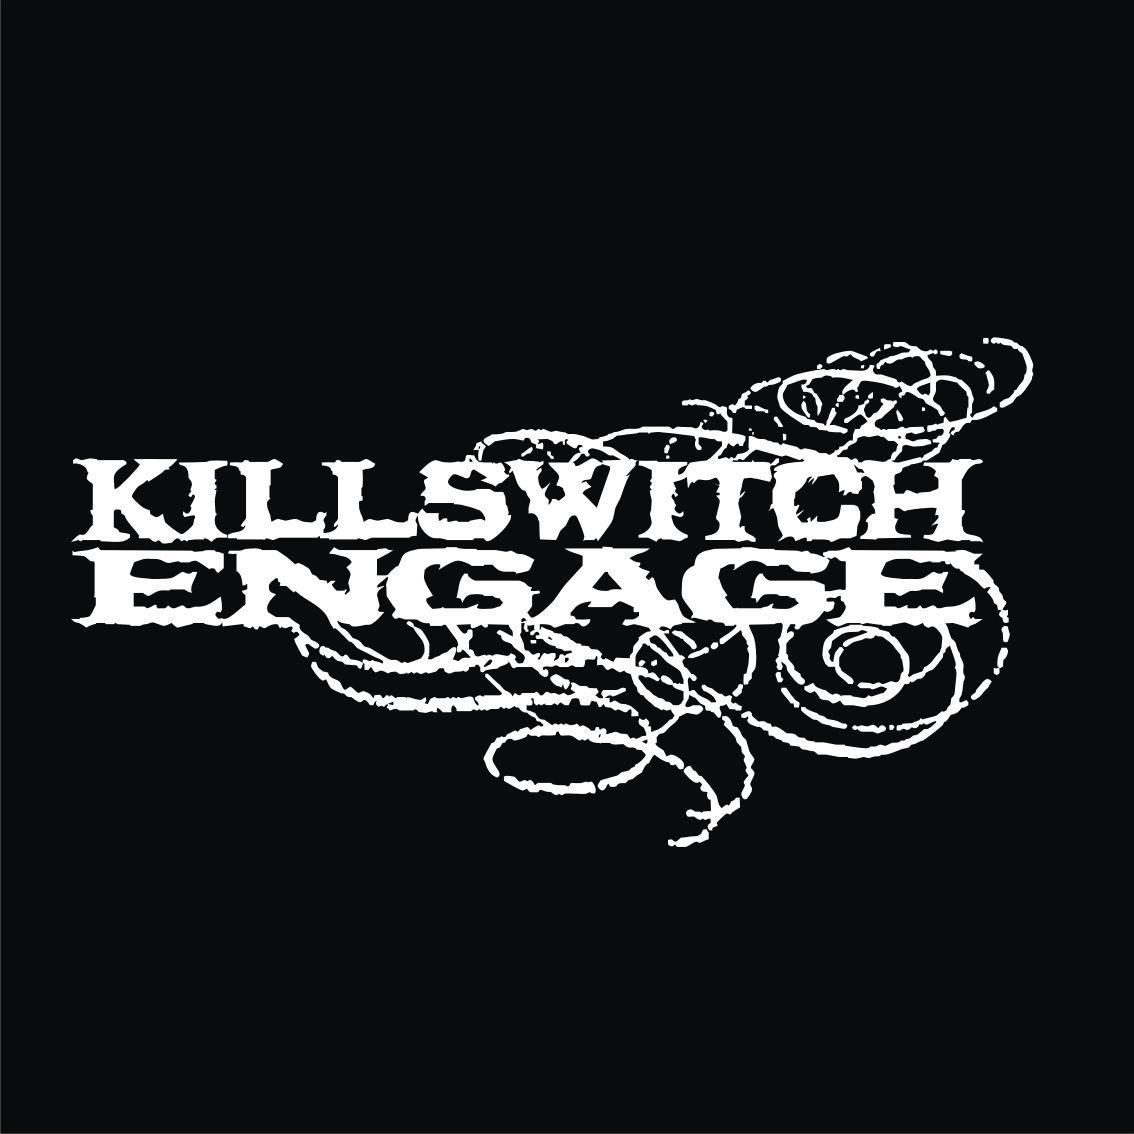 Killswitch Engage Logo - Best Killswitch Engage❤ image. Killswitch engage, Heavy